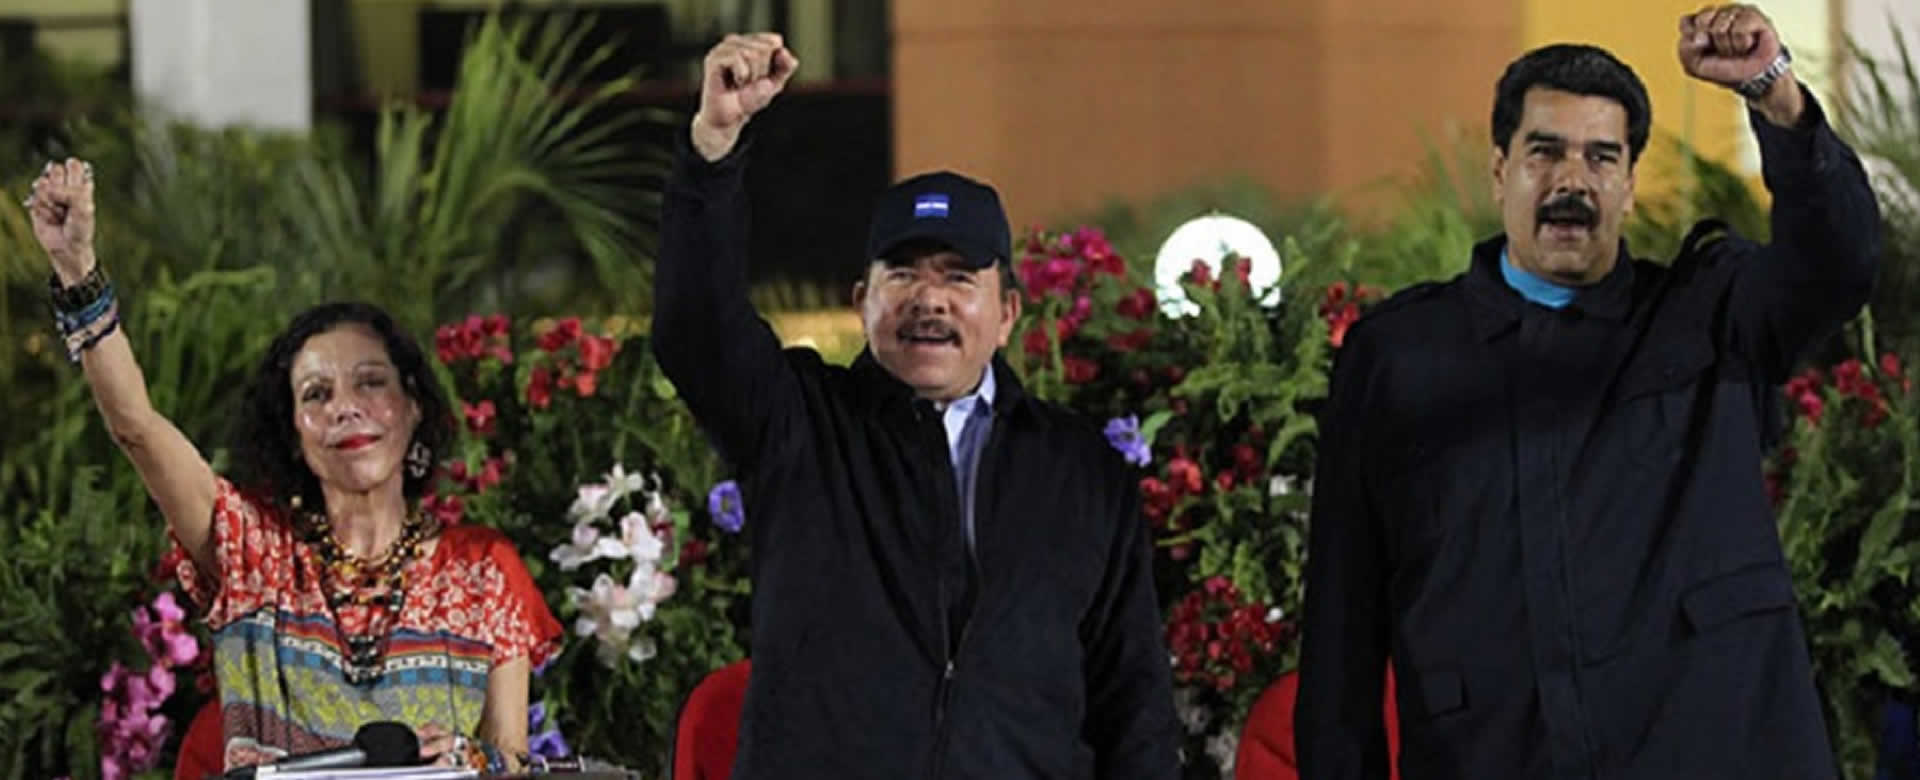 Daniel y Rosario envía mensaje fraternal al Presidente Nicolás Maduro